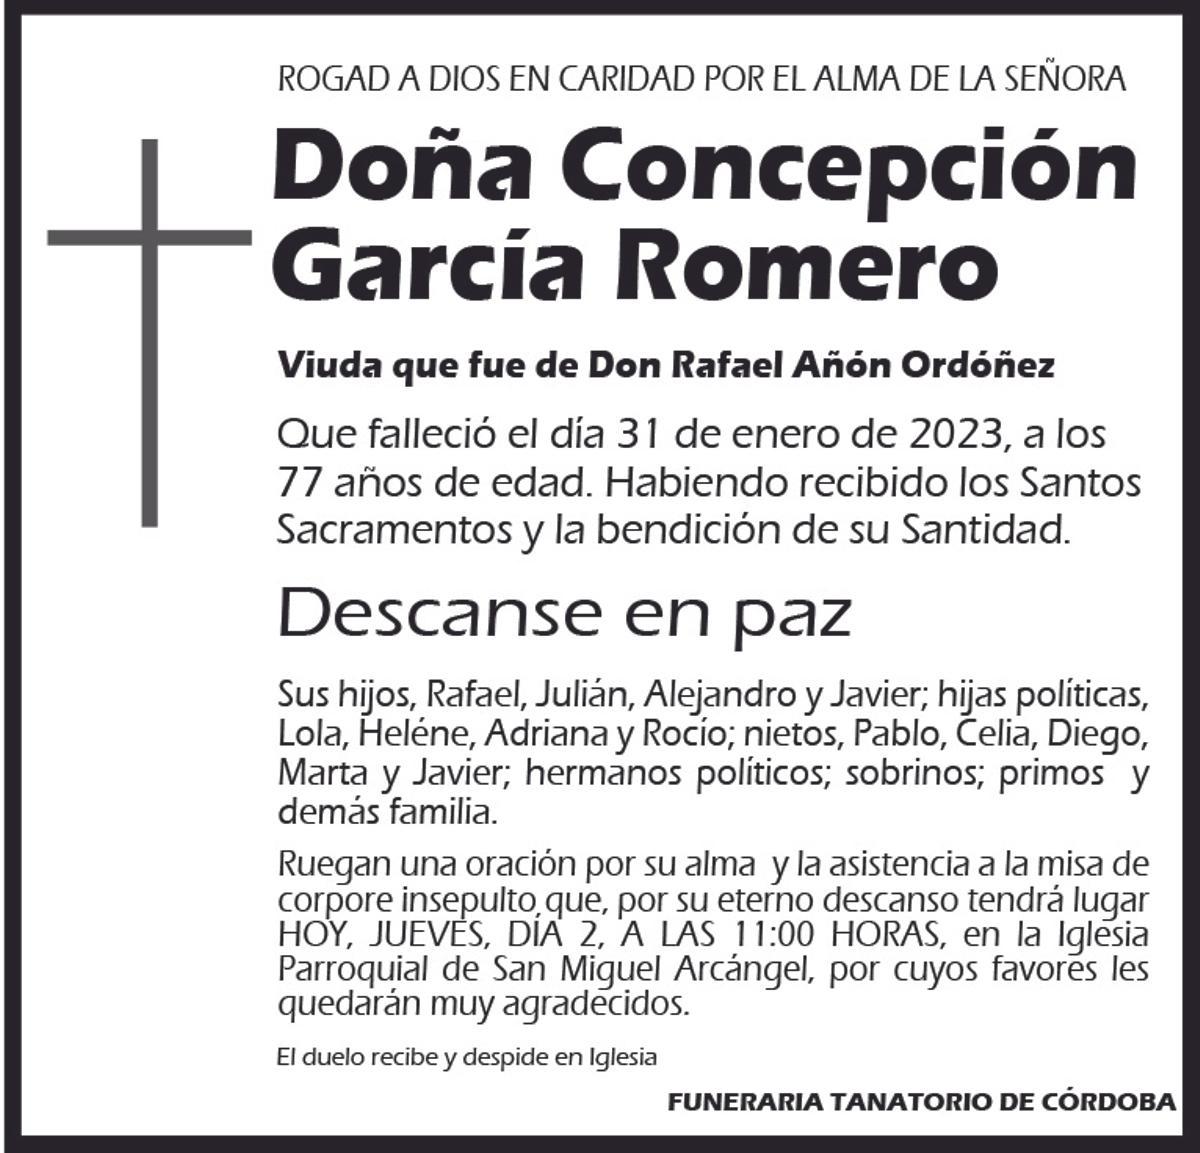 Concepción García Romero